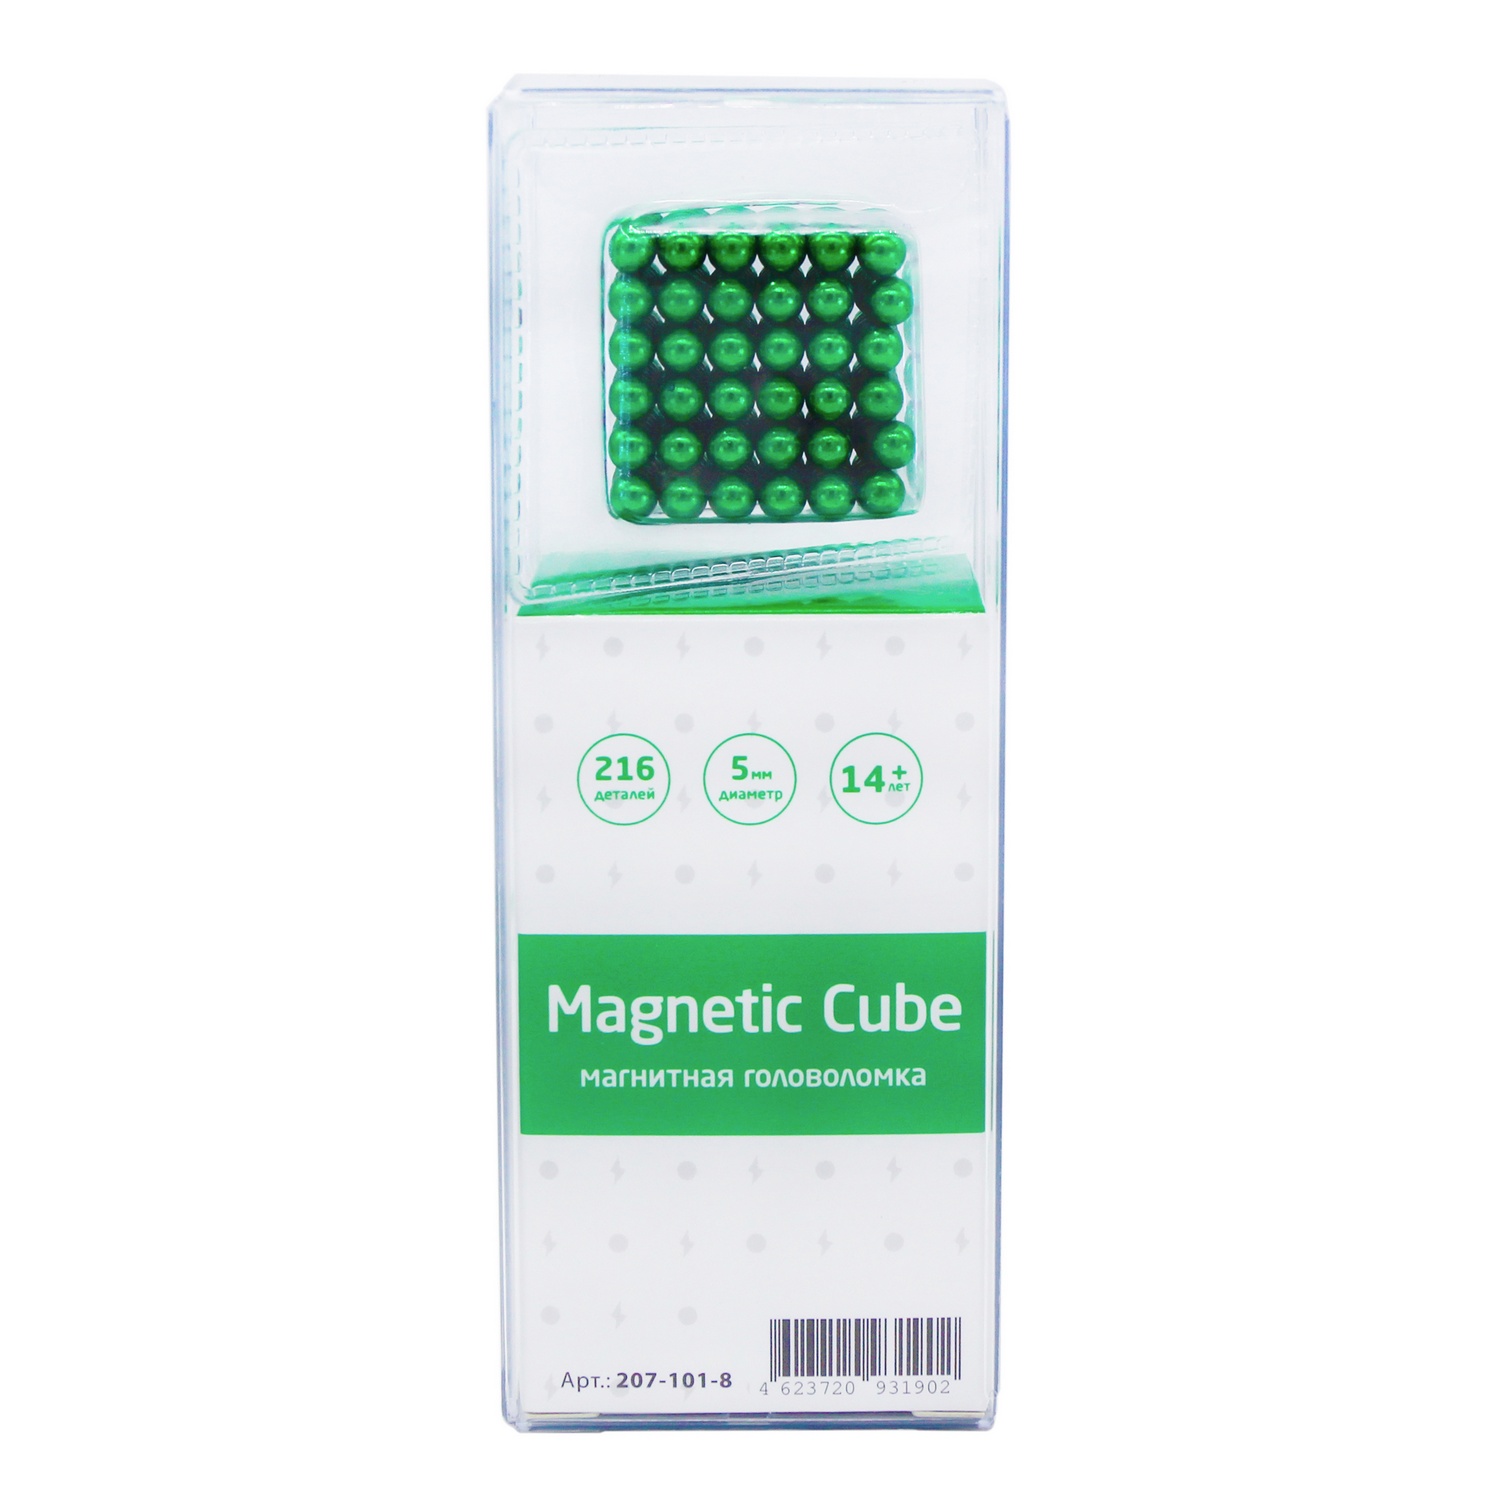 Головоломка магнитная Magnetic Cube зеленый неокуб 216 элементов - фото 3